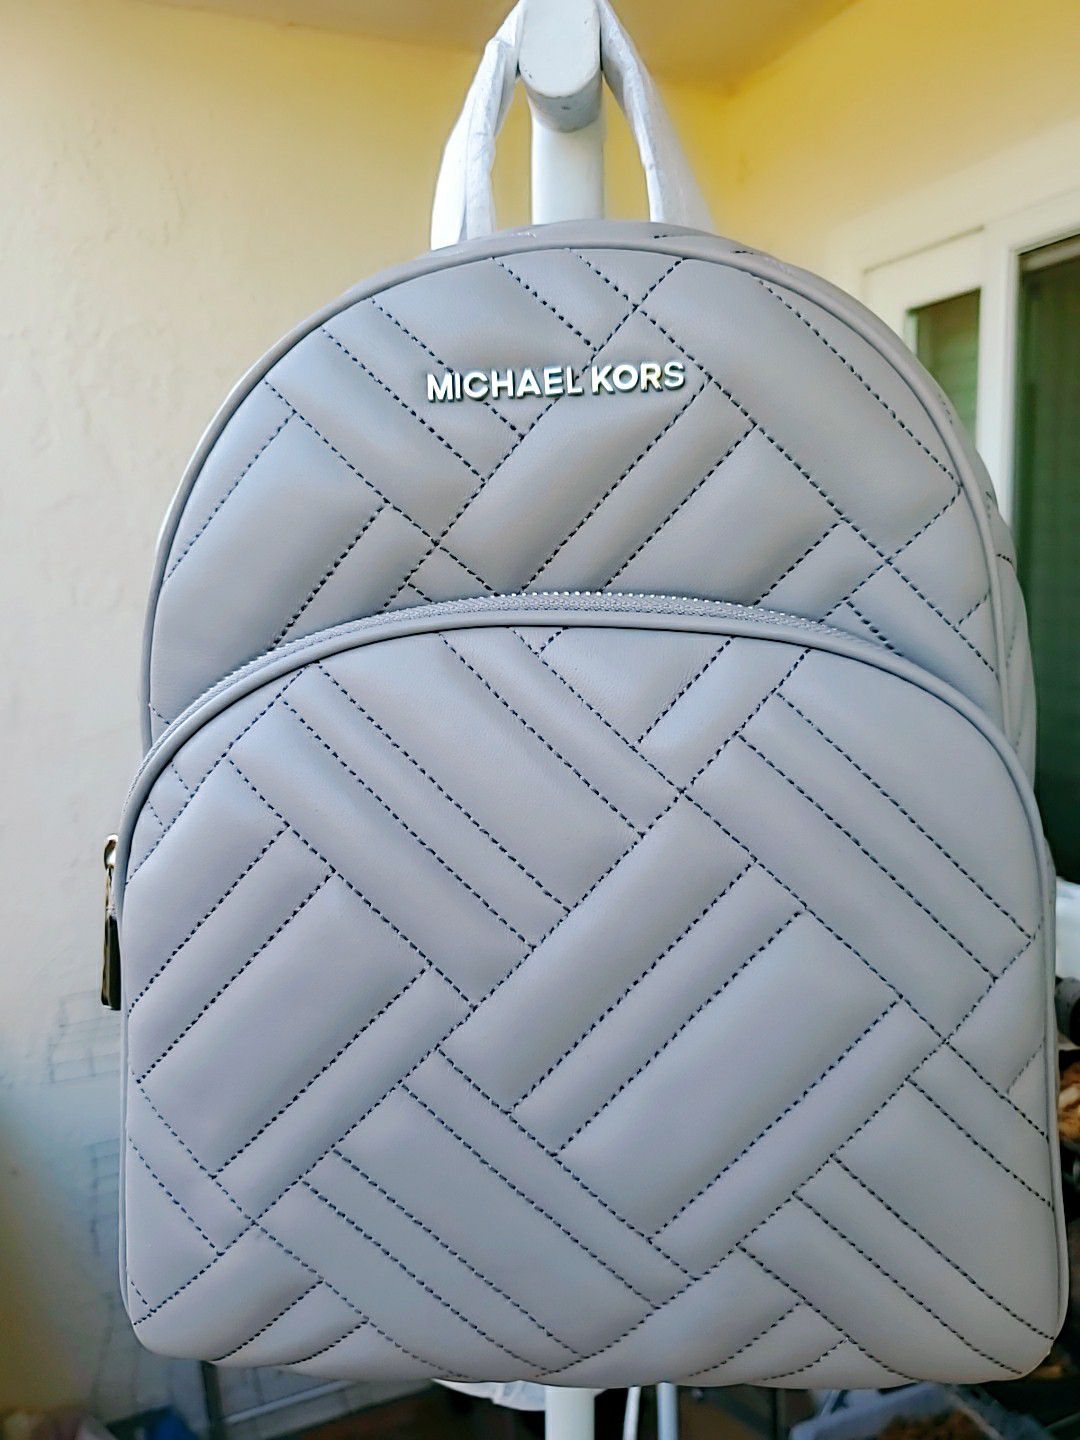 Brand new Michael Kors backpack